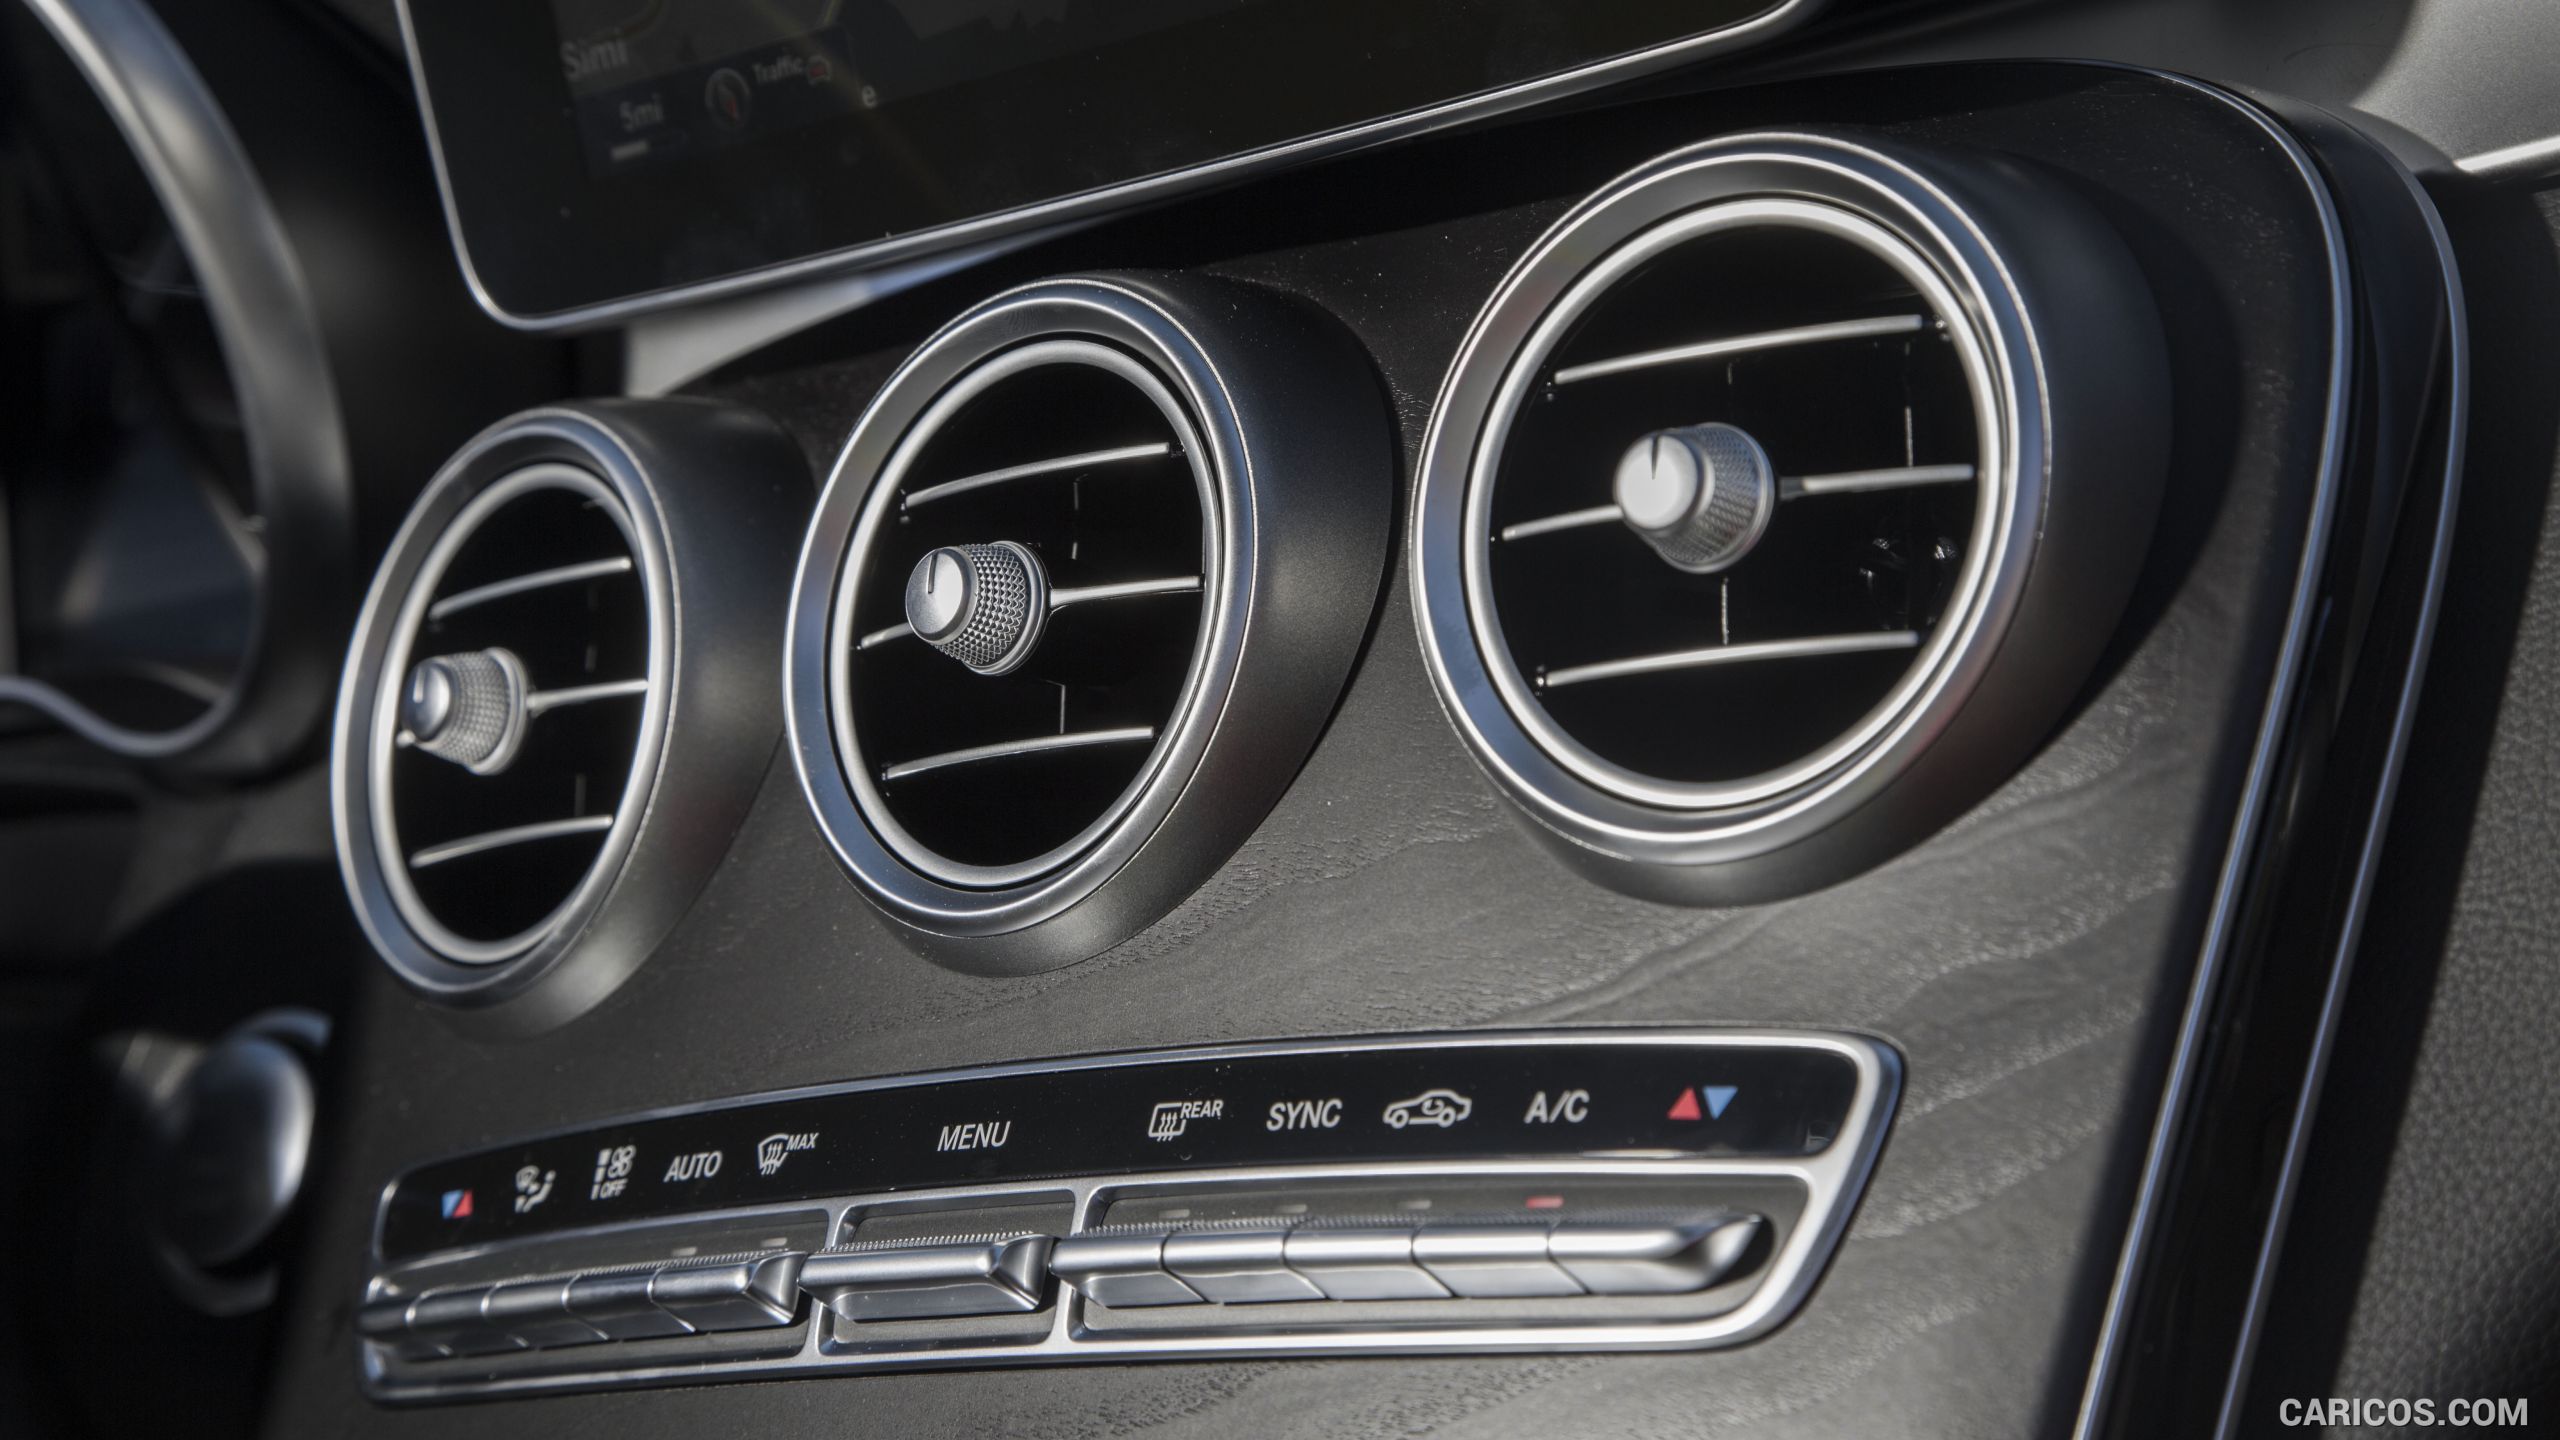 2016 Mercedes-Benz C450 AMG Sedan (US-Spec) - Interior, Air Vent, #115 of 122